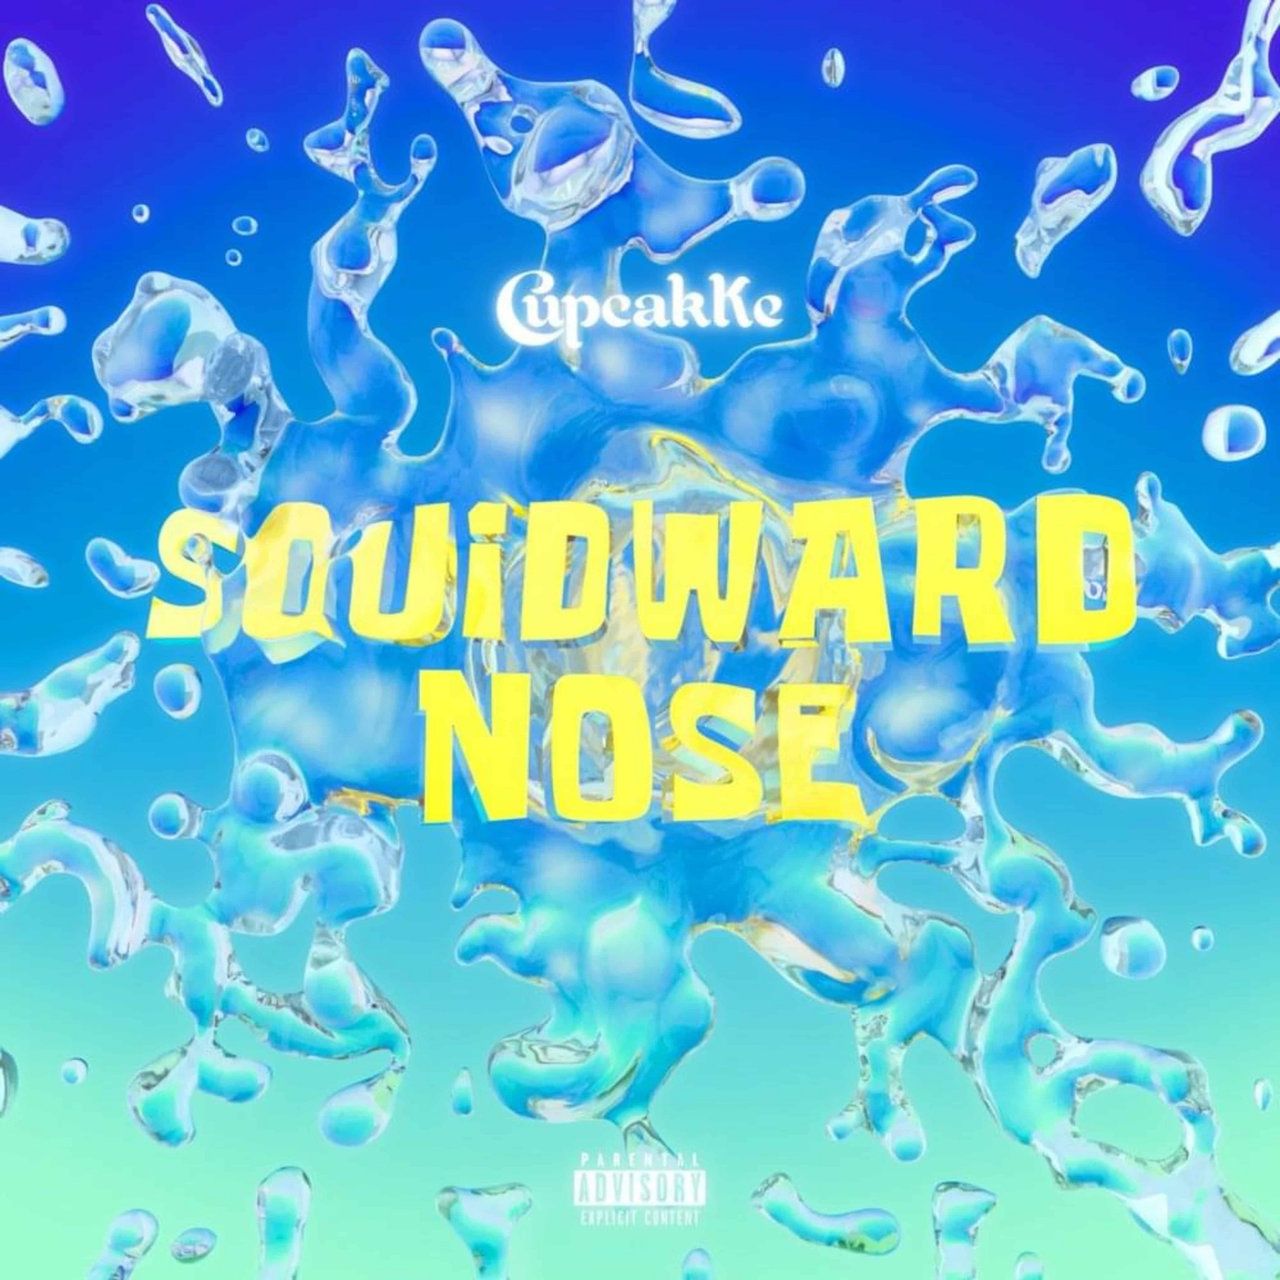 CupcakKe Squidward Nose cover artwork